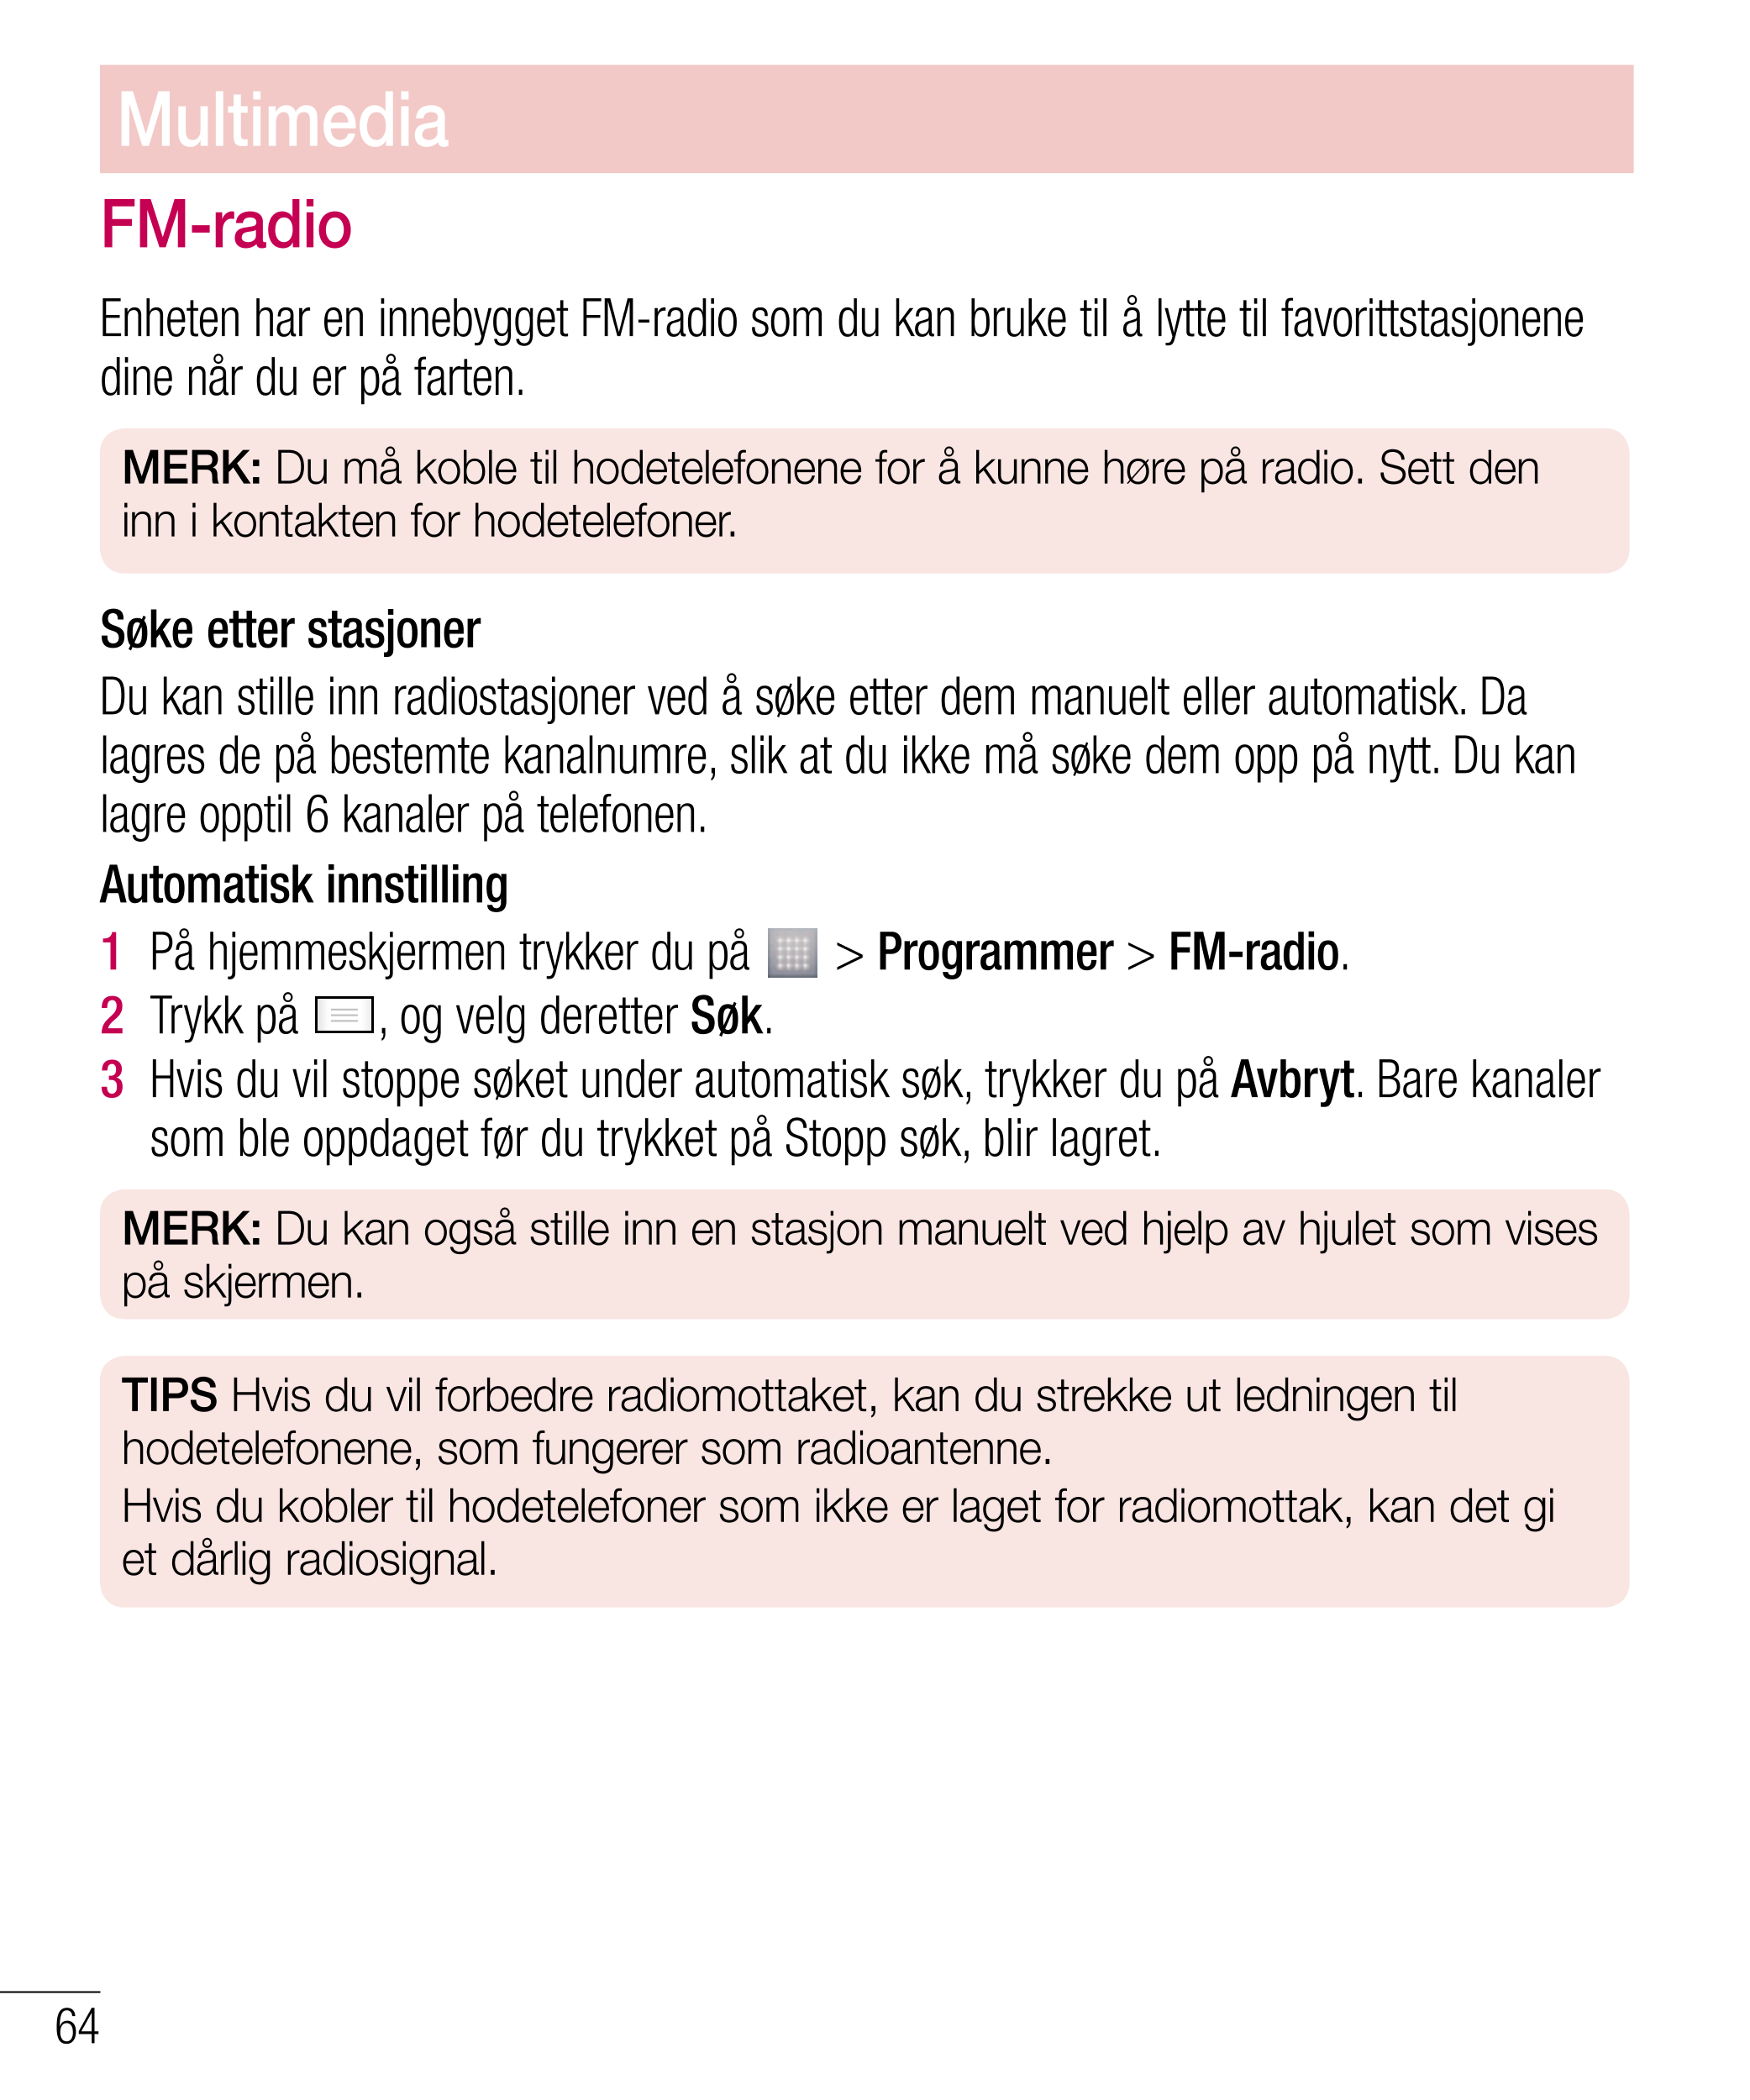 Multimedia
FM-radio
Enheten har en innebygget FM-radio som du kan bruke til å lytte til favorittstasjonene 
dine når du er på fa